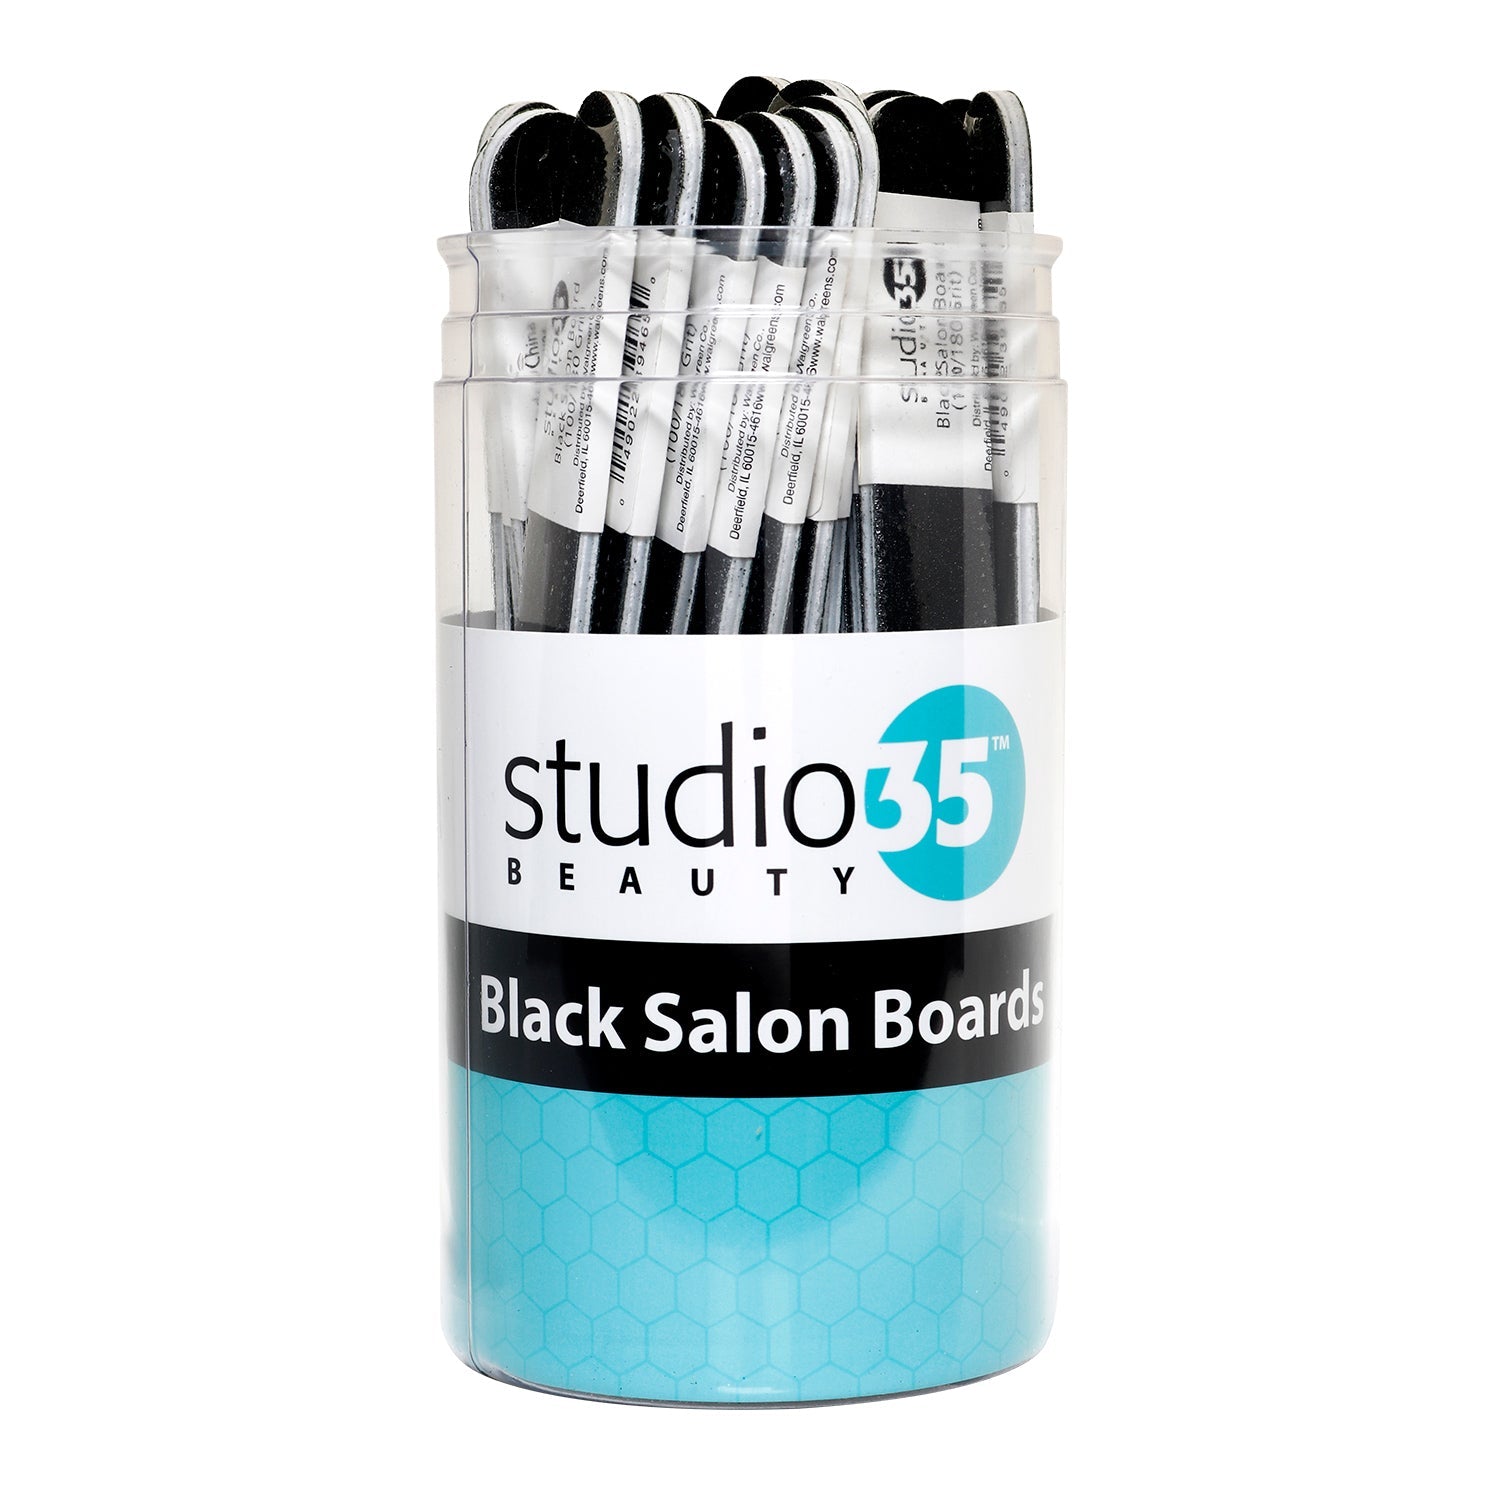 Studio 35 Beauty Black Salon Board